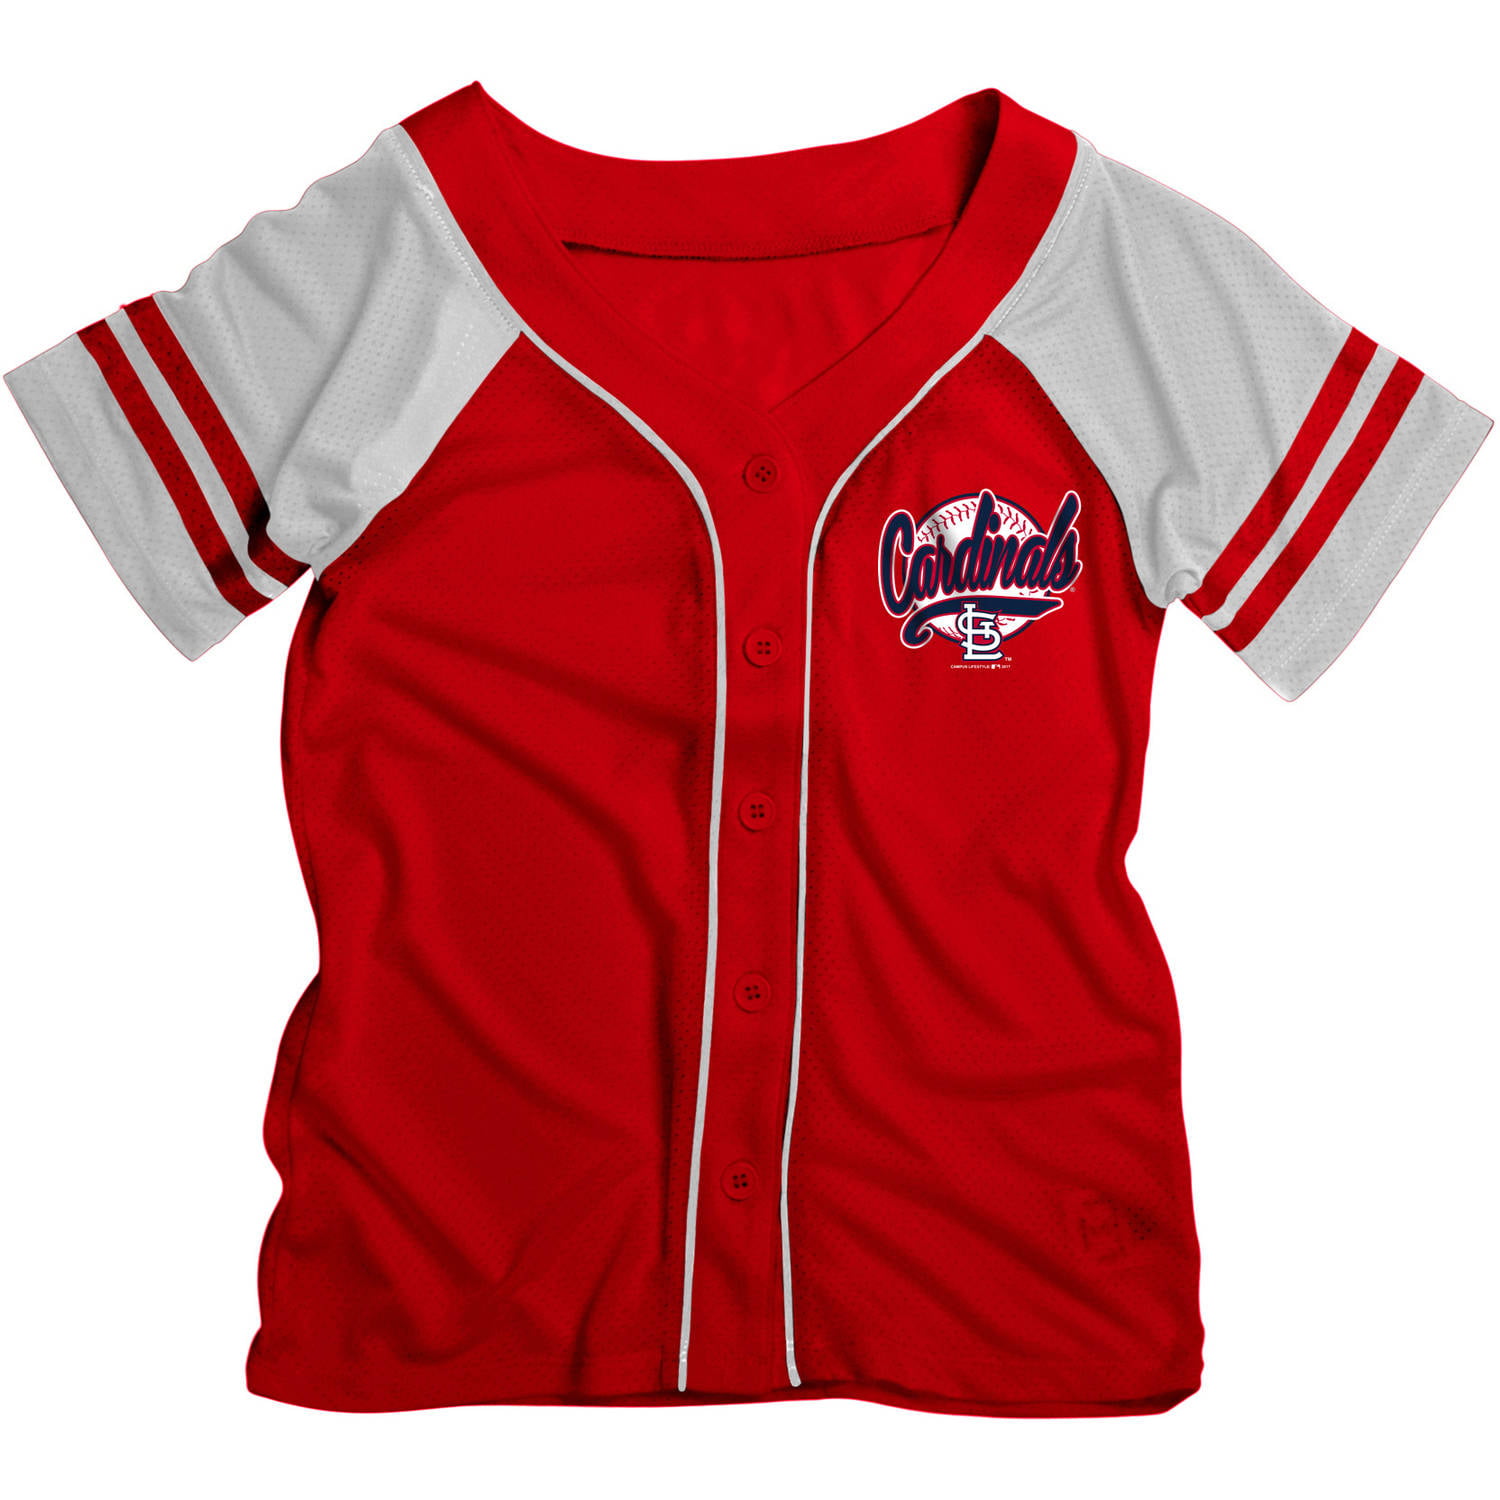 St. Louis Cardinals Baseball jersey kids boys/girl 1/4 button up Size M/10